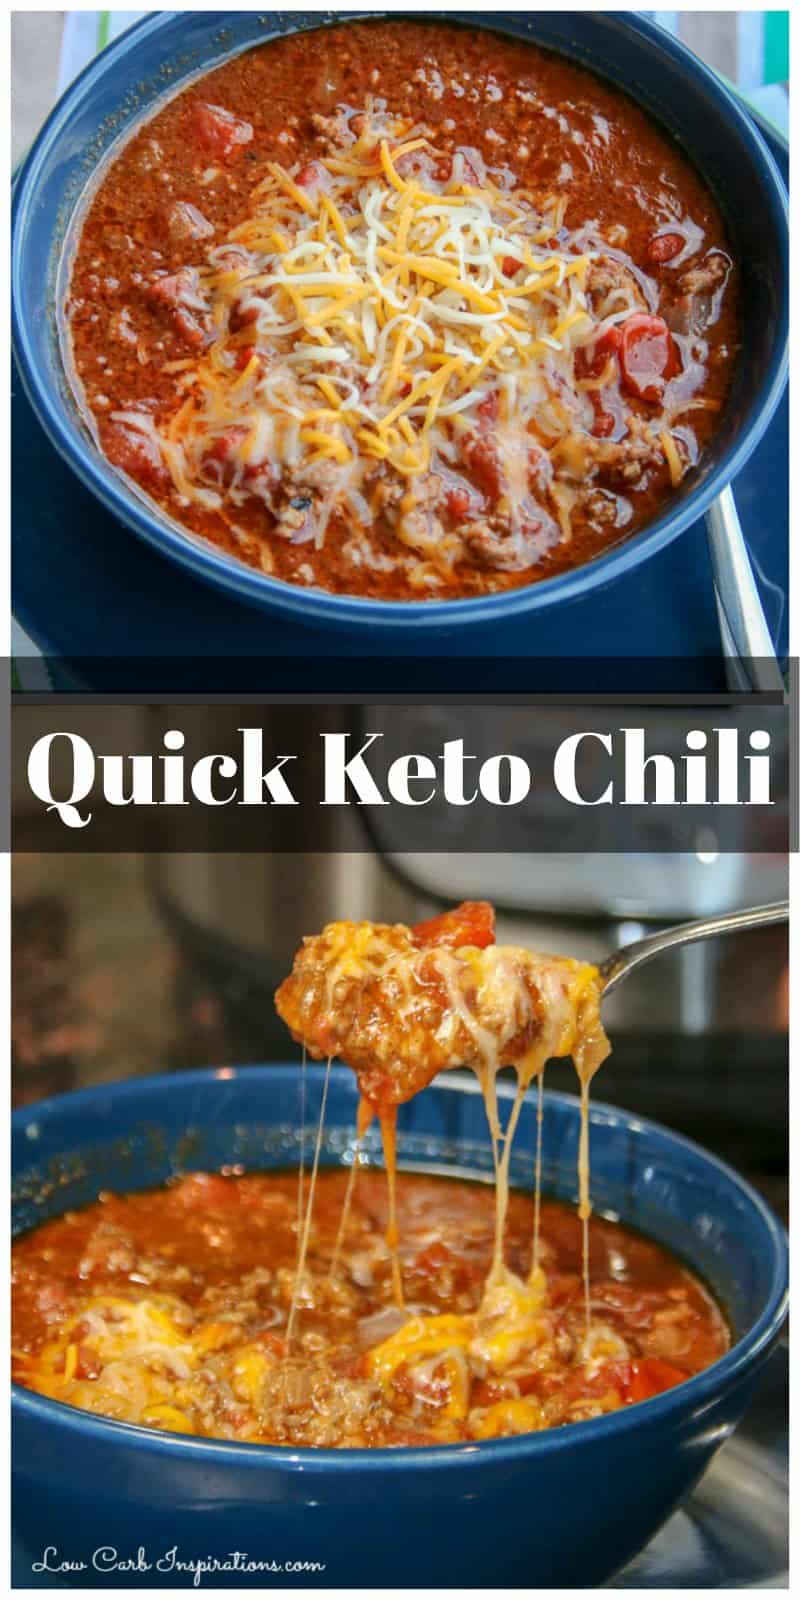 Quick Keto Chili Recipe Made in the Pressure Cooker ...